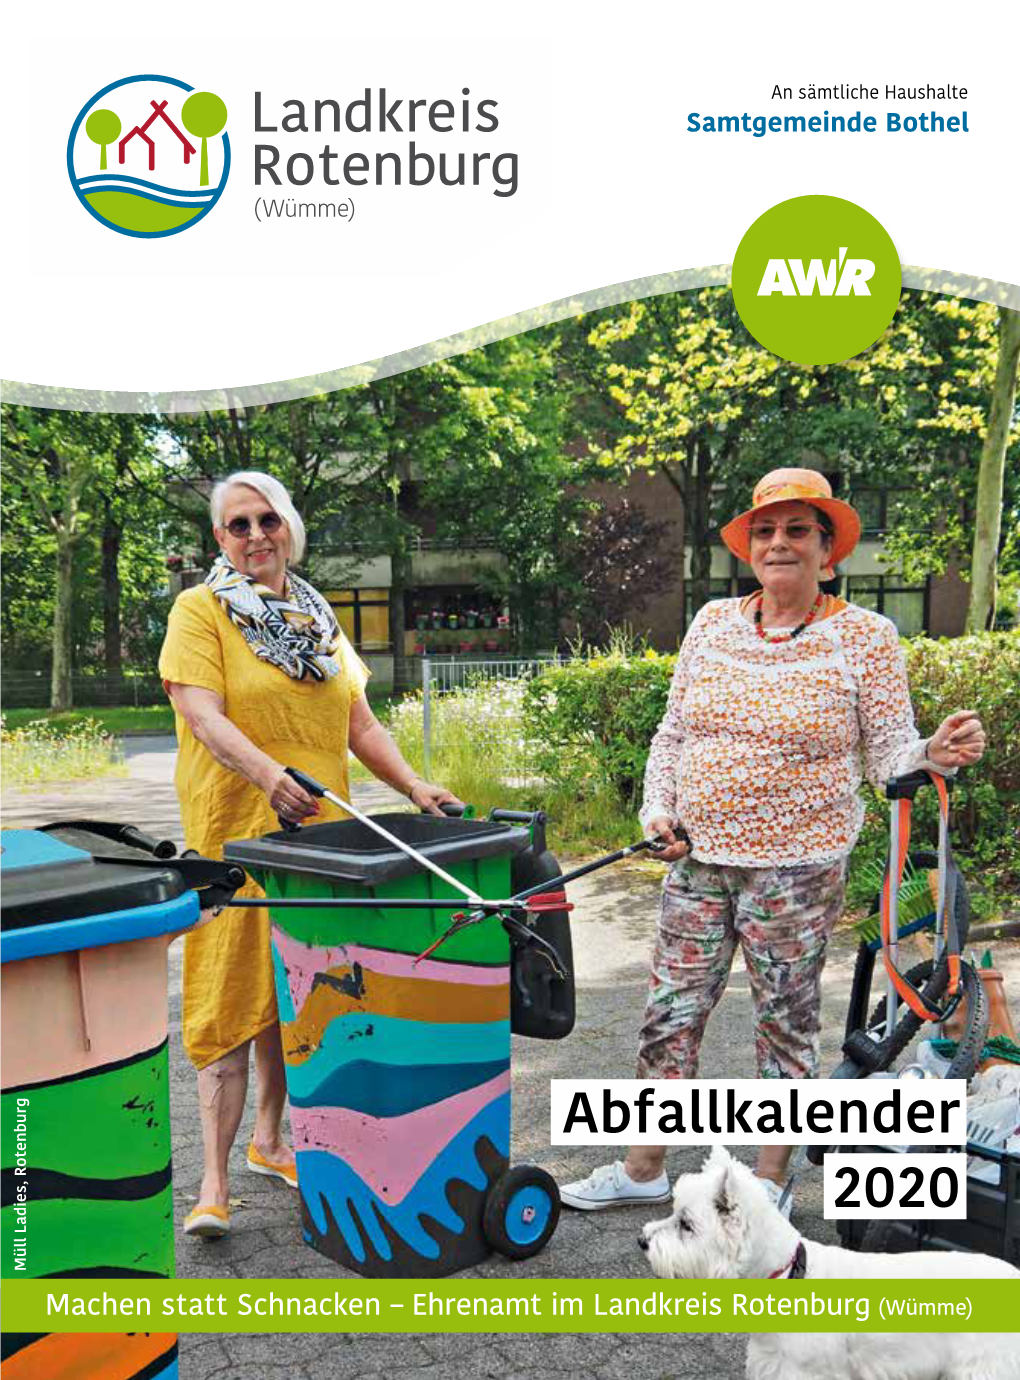 AWR Abfallkalender 2020